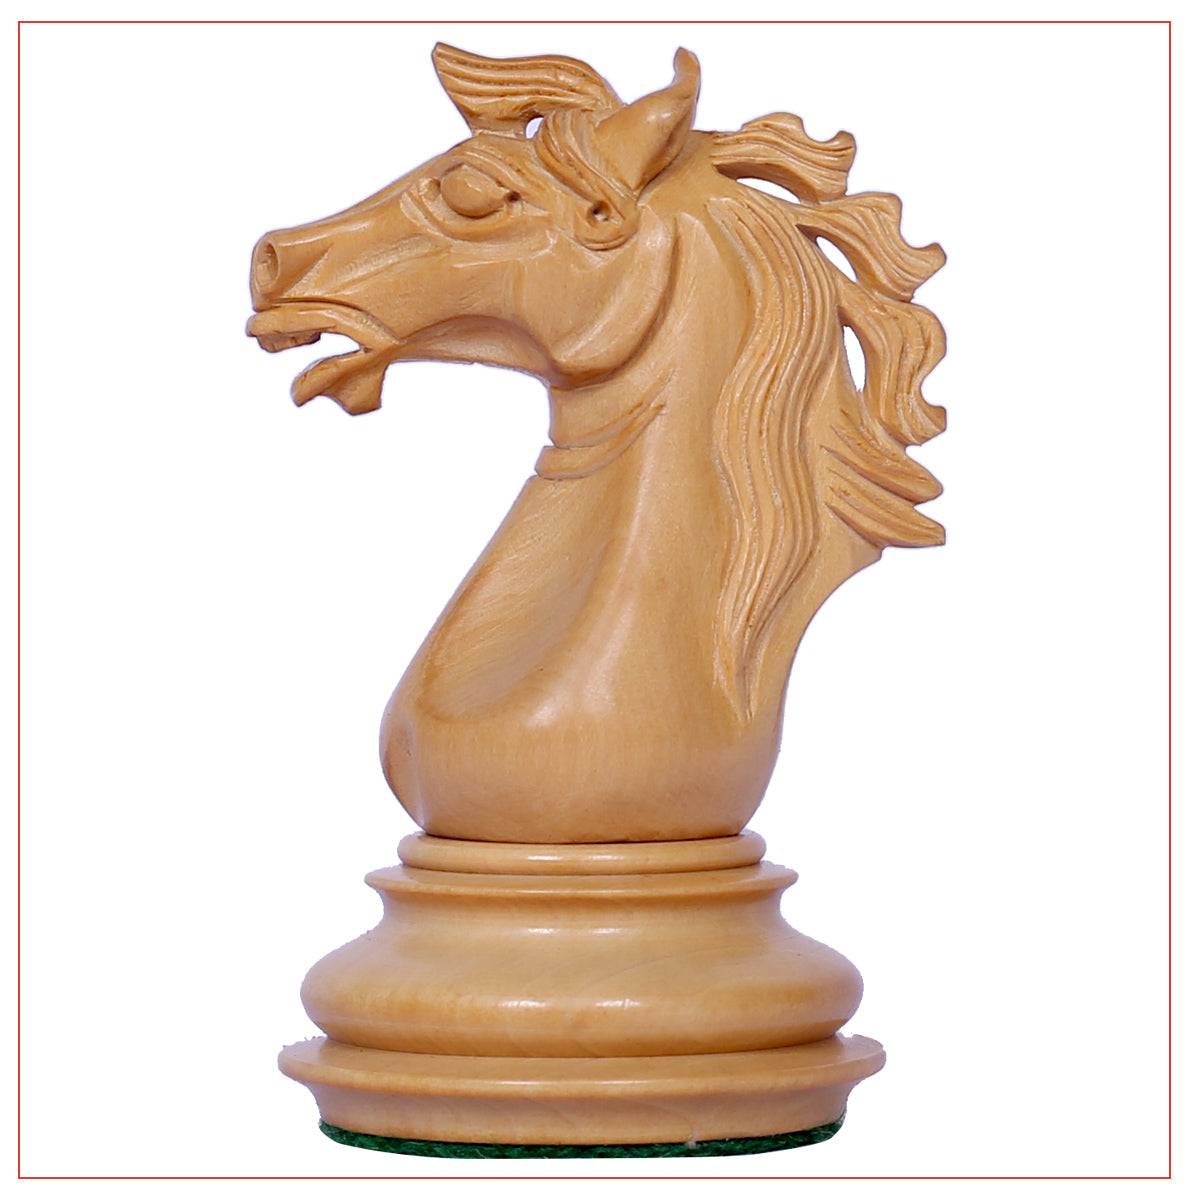 Regal Series 4" Padouk Wood Chess Pieces